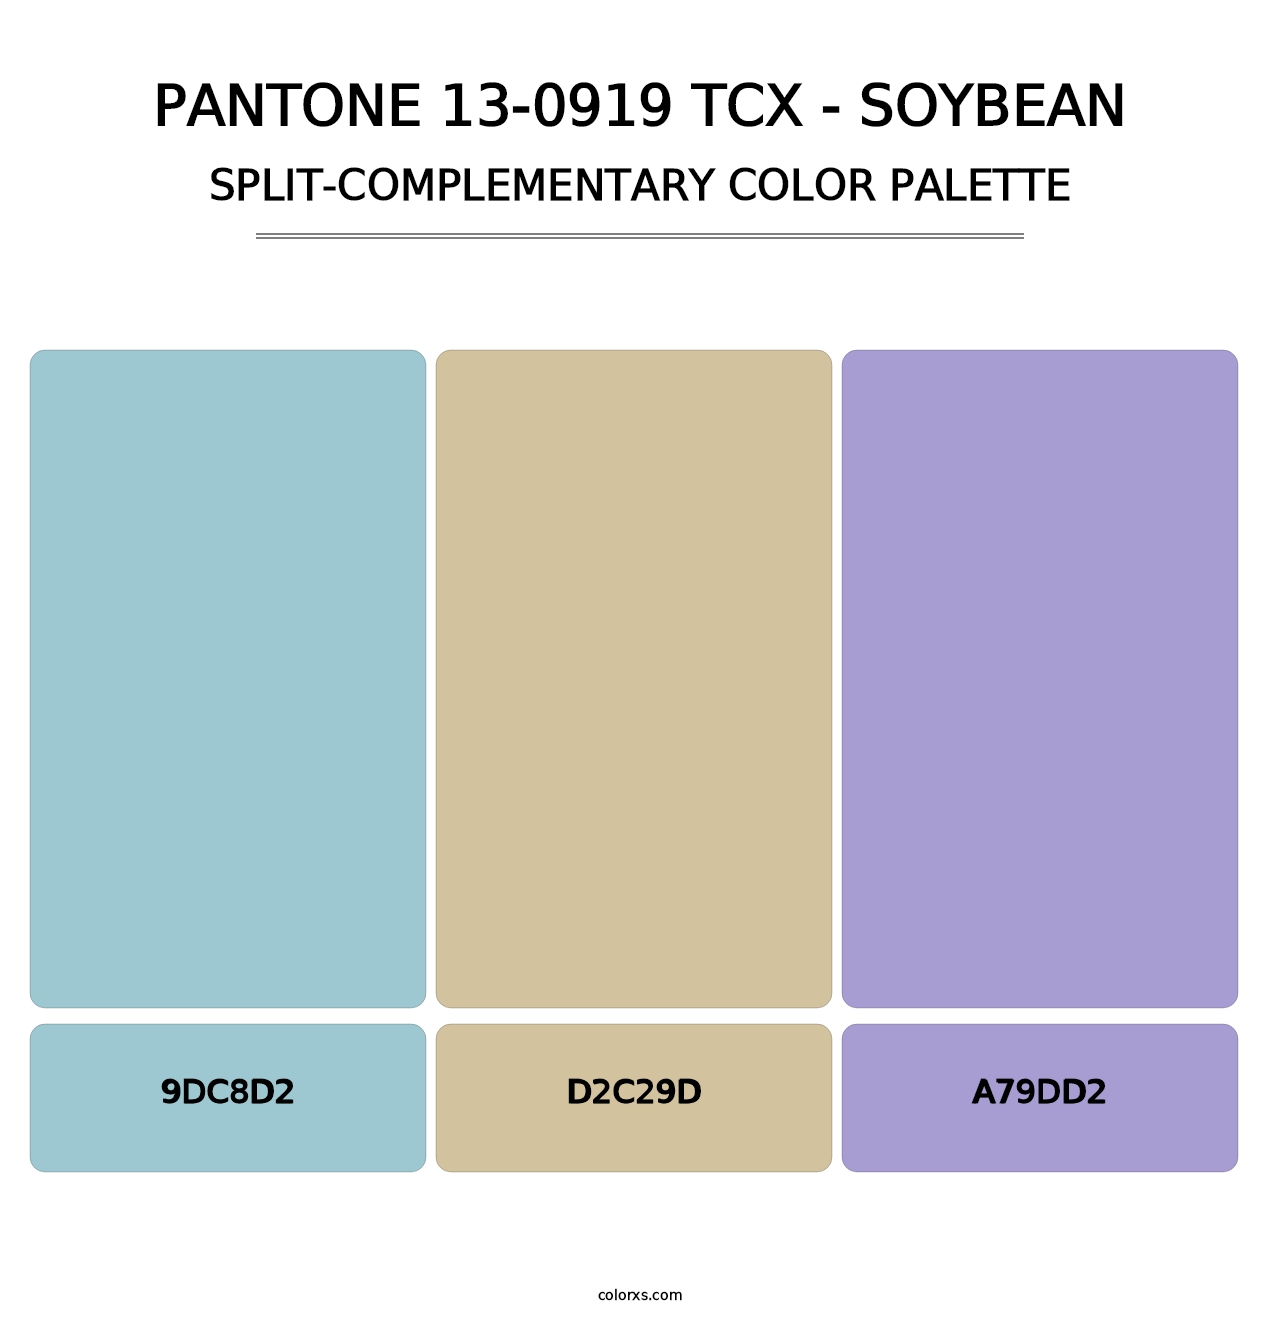 PANTONE 13-0919 TCX - Soybean - Split-Complementary Color Palette